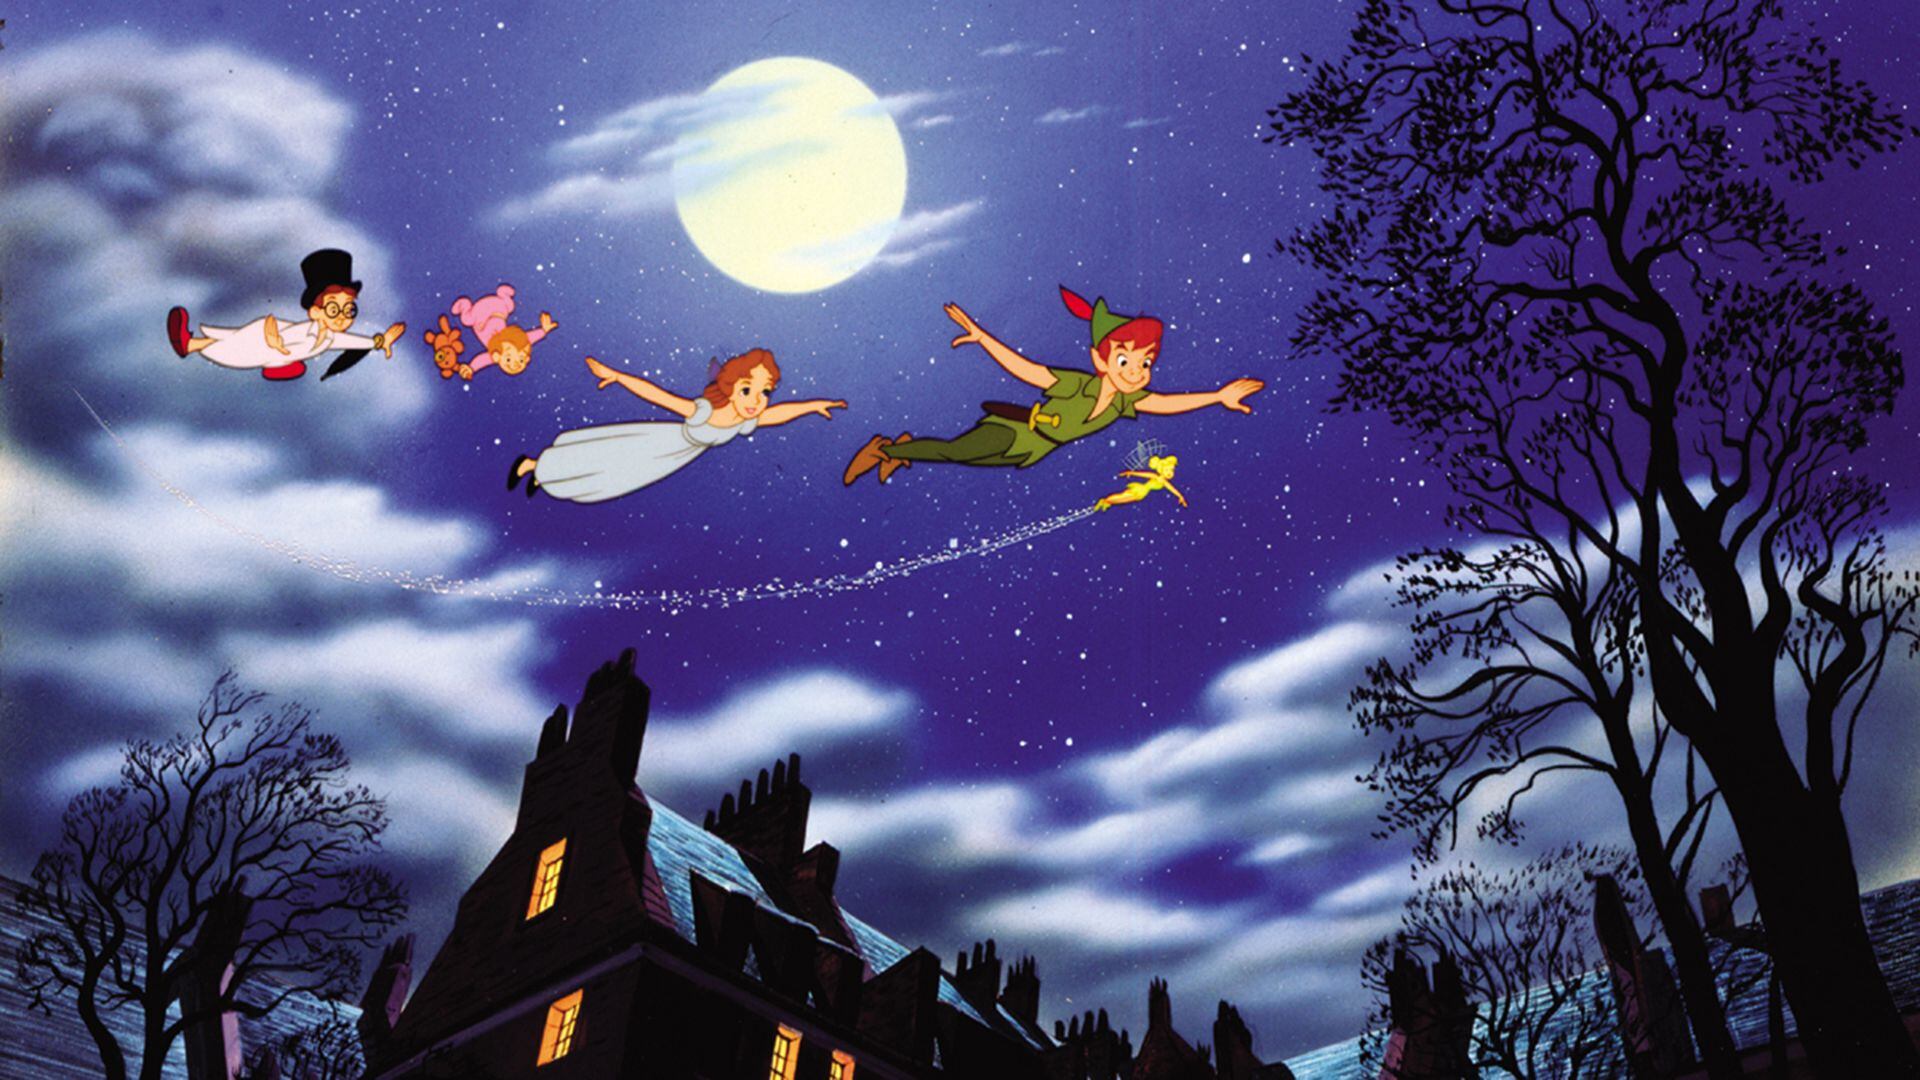 La adaptación en imagen real de "Peter Pan" contará con los actores Alexander Molony, Ever Anderson y Jude Law. (Foto cortesía)